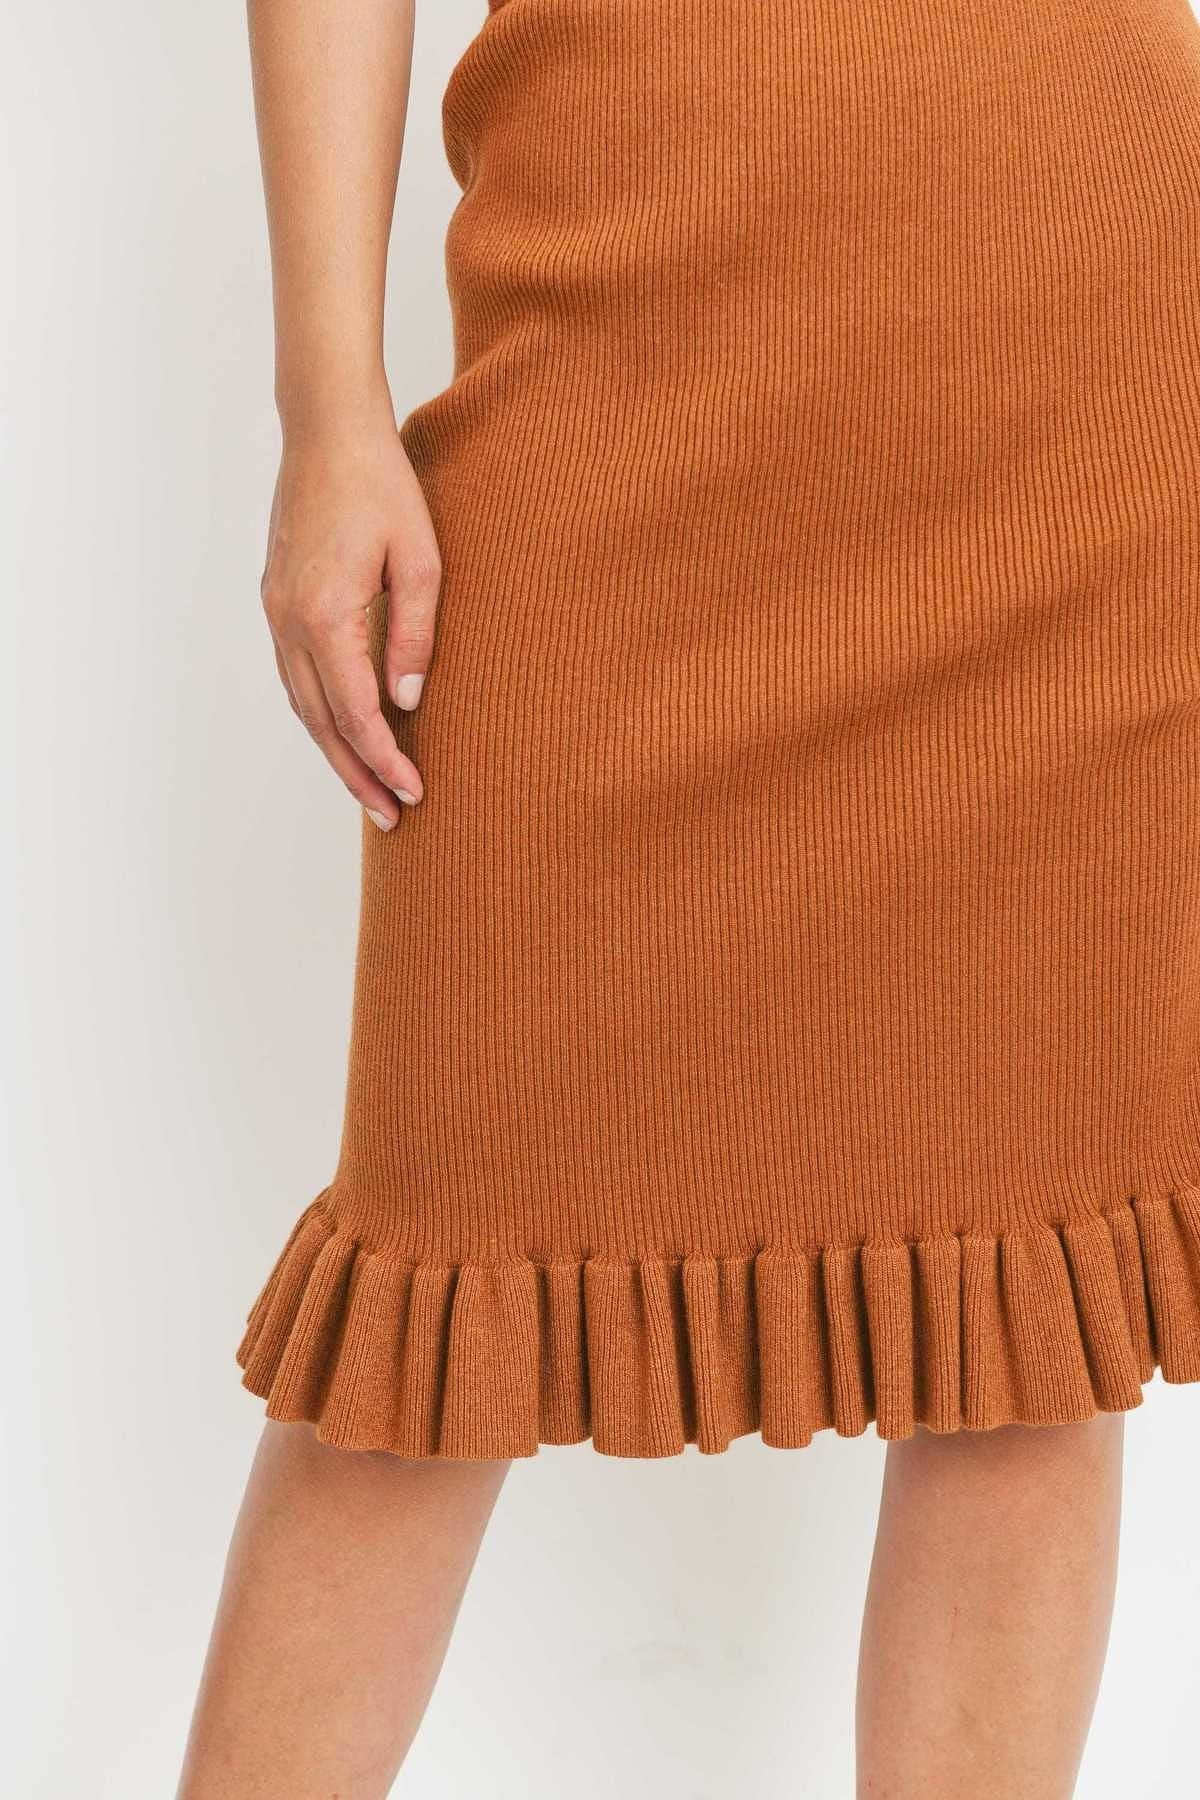 NEW ~ Sweater Knit Ruffle Midi Skirt